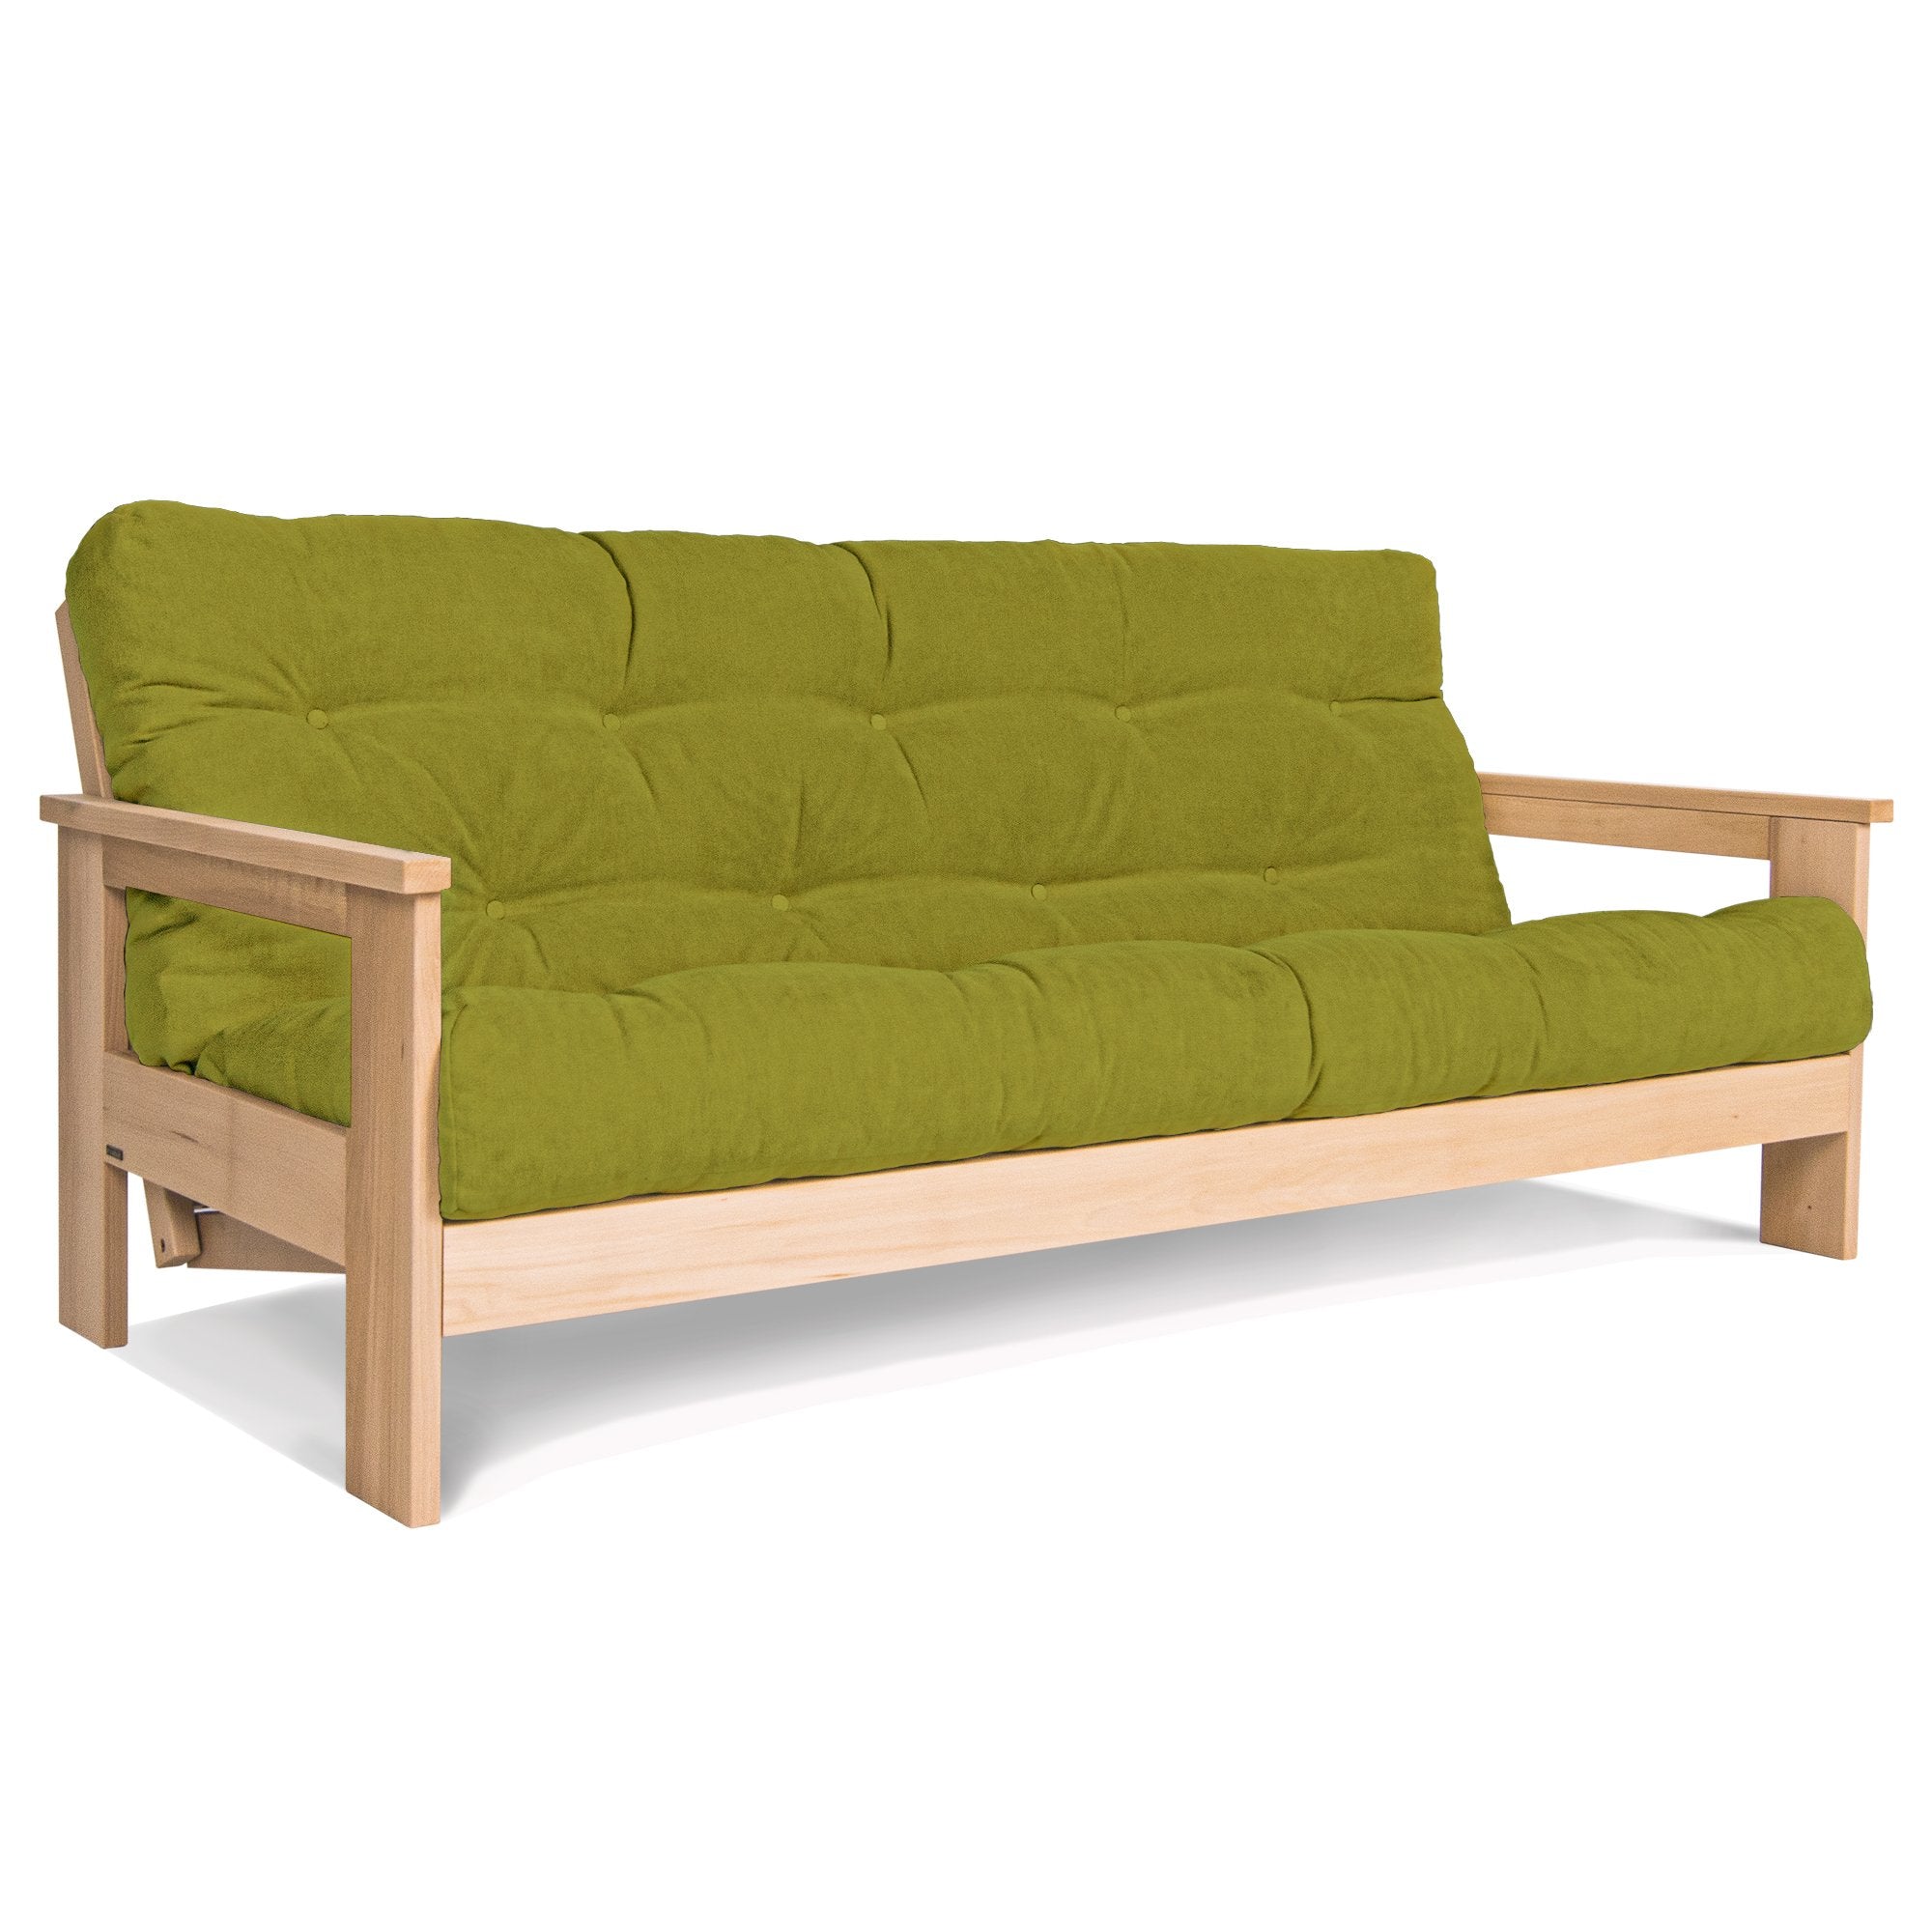 Розкладний диван-футон MEXICO, бук натурального кольору